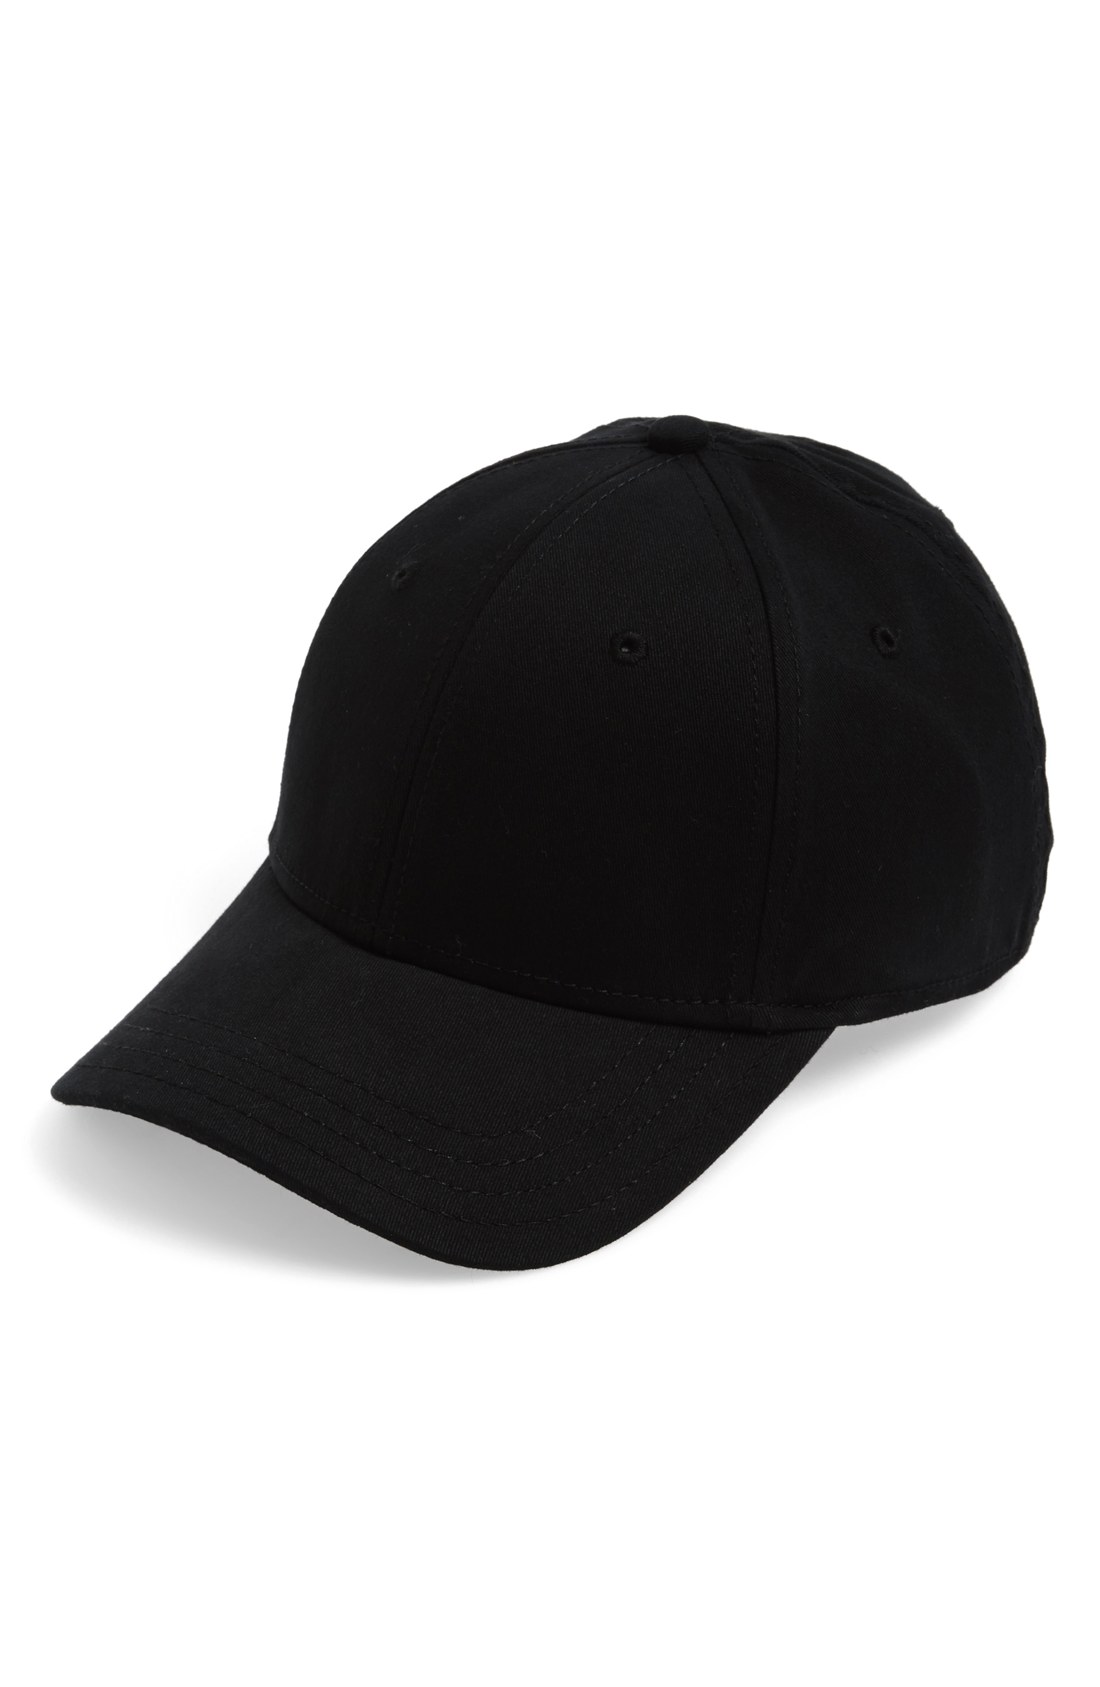 Baseball Hats for Men | Nordstrom